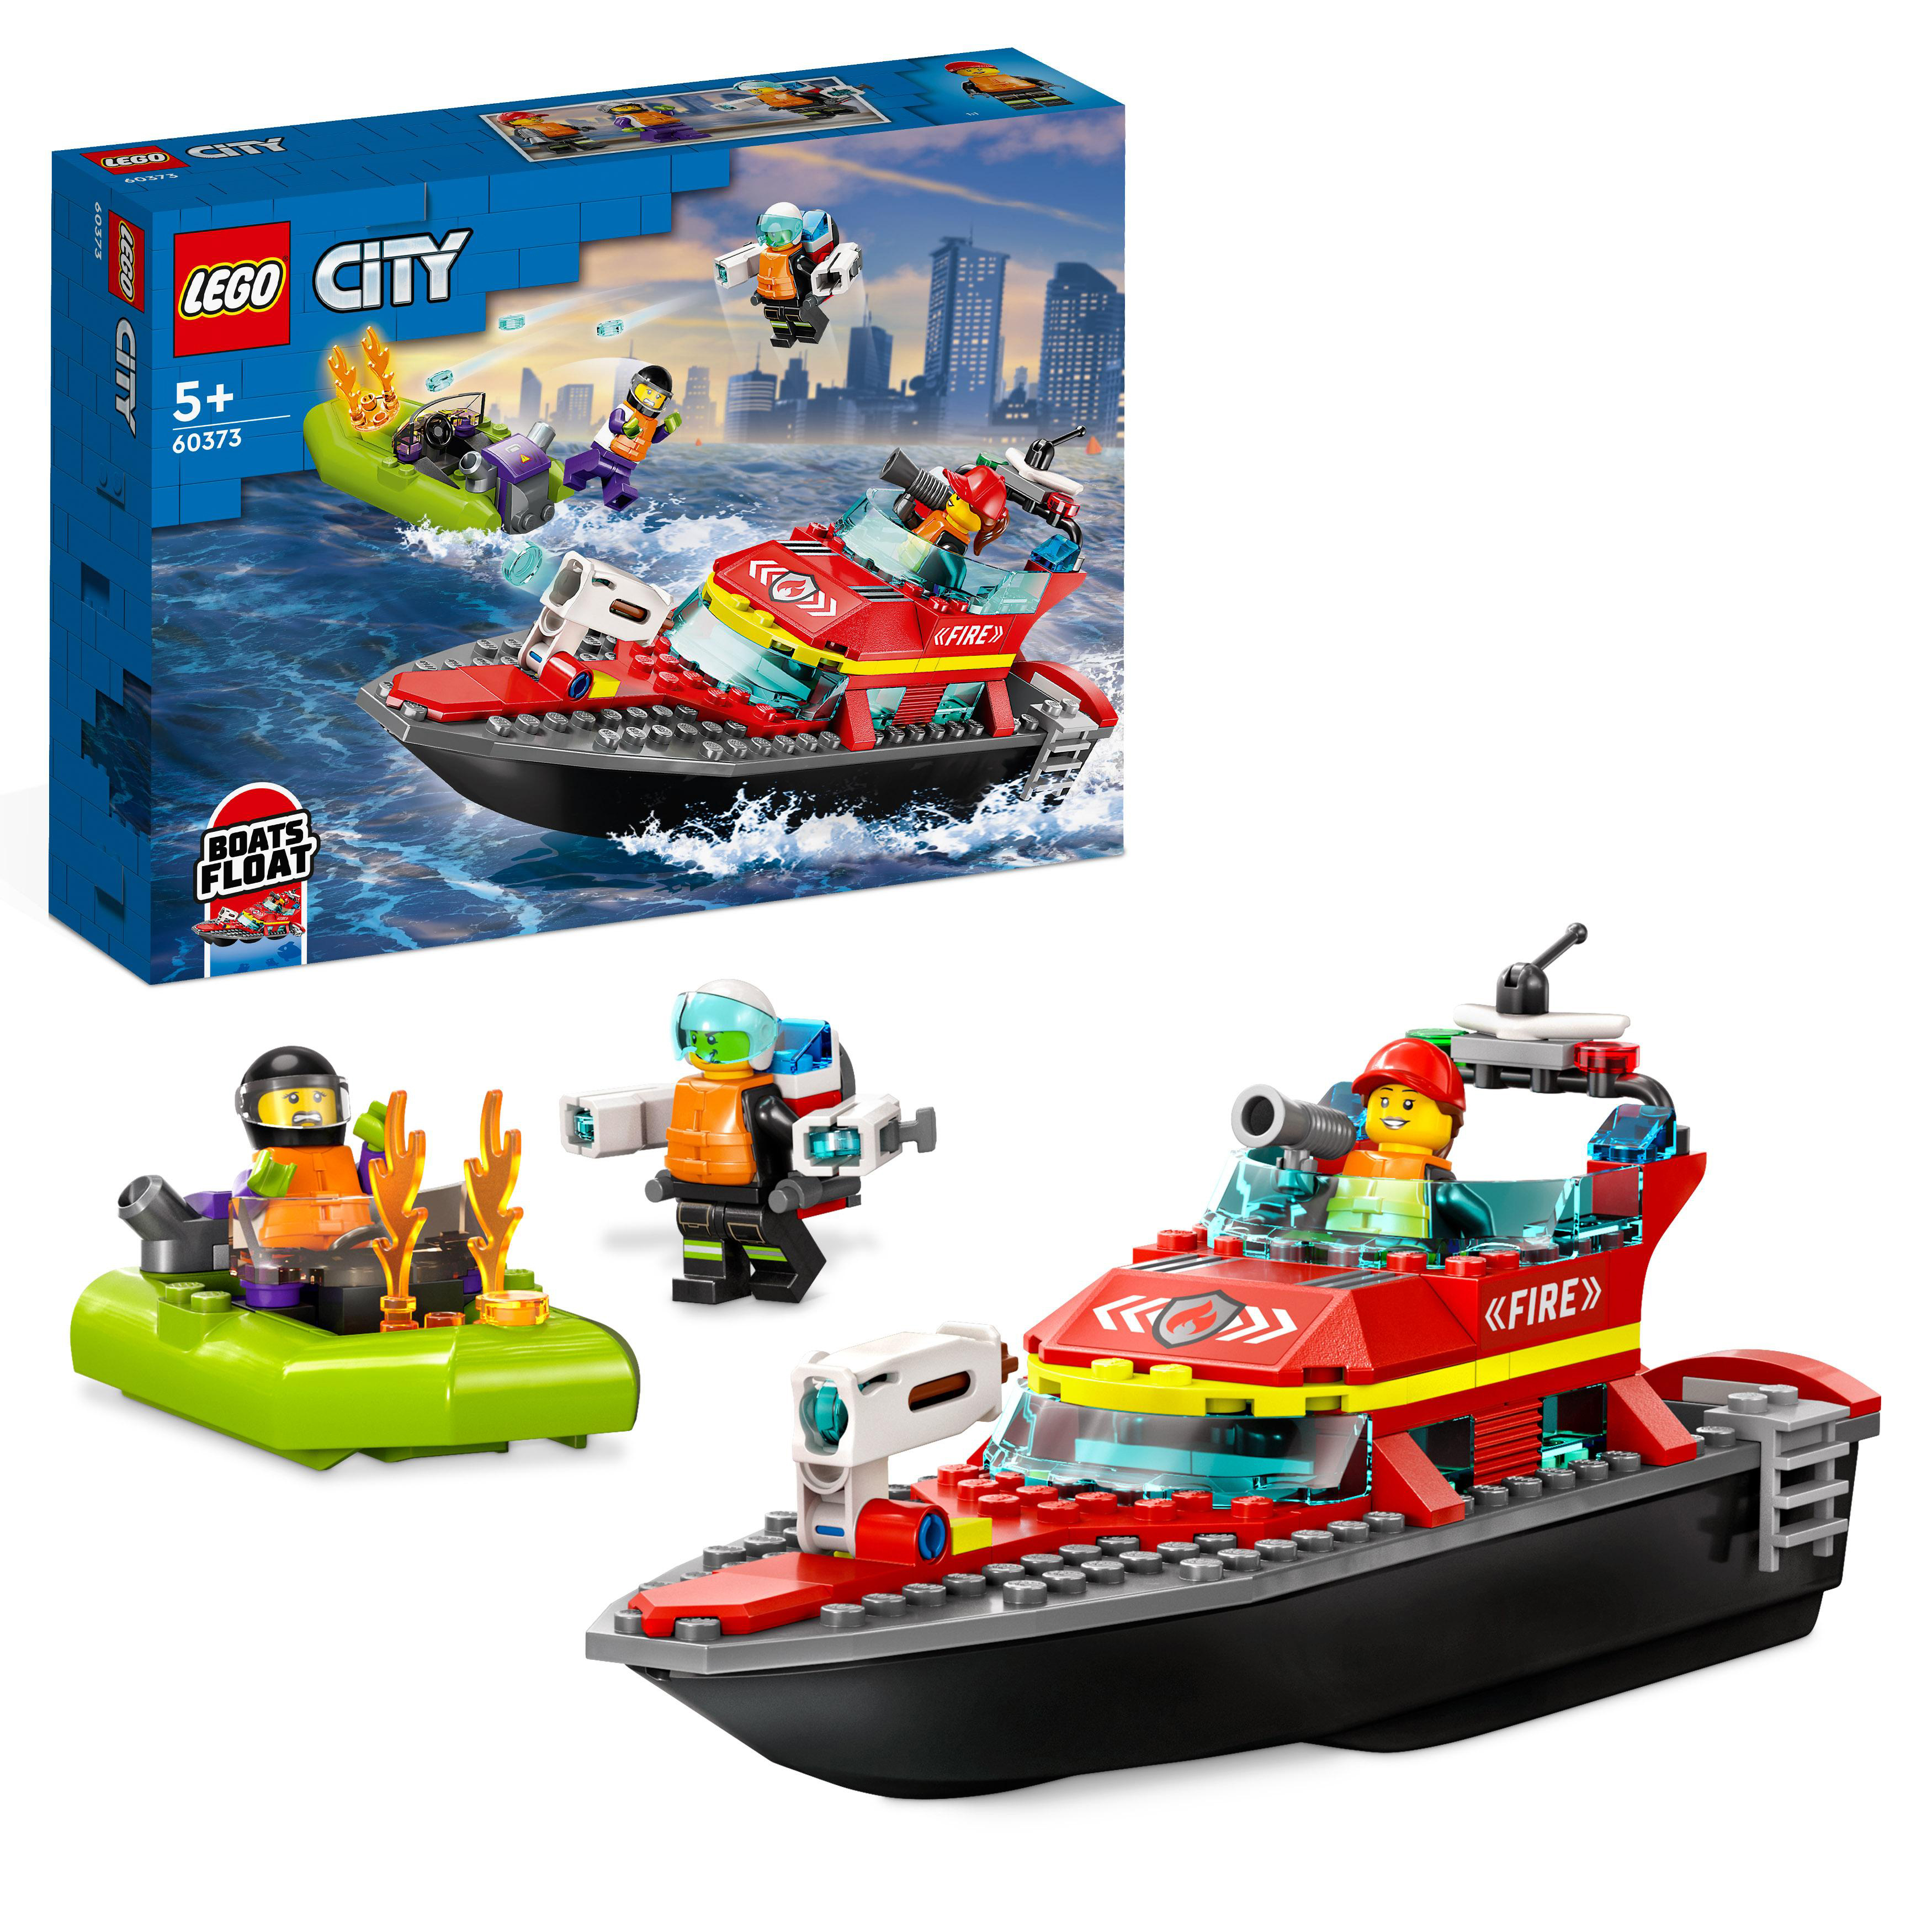 LEGO City Feuerwehrboot Mehrfarbig 60373 Bausatz